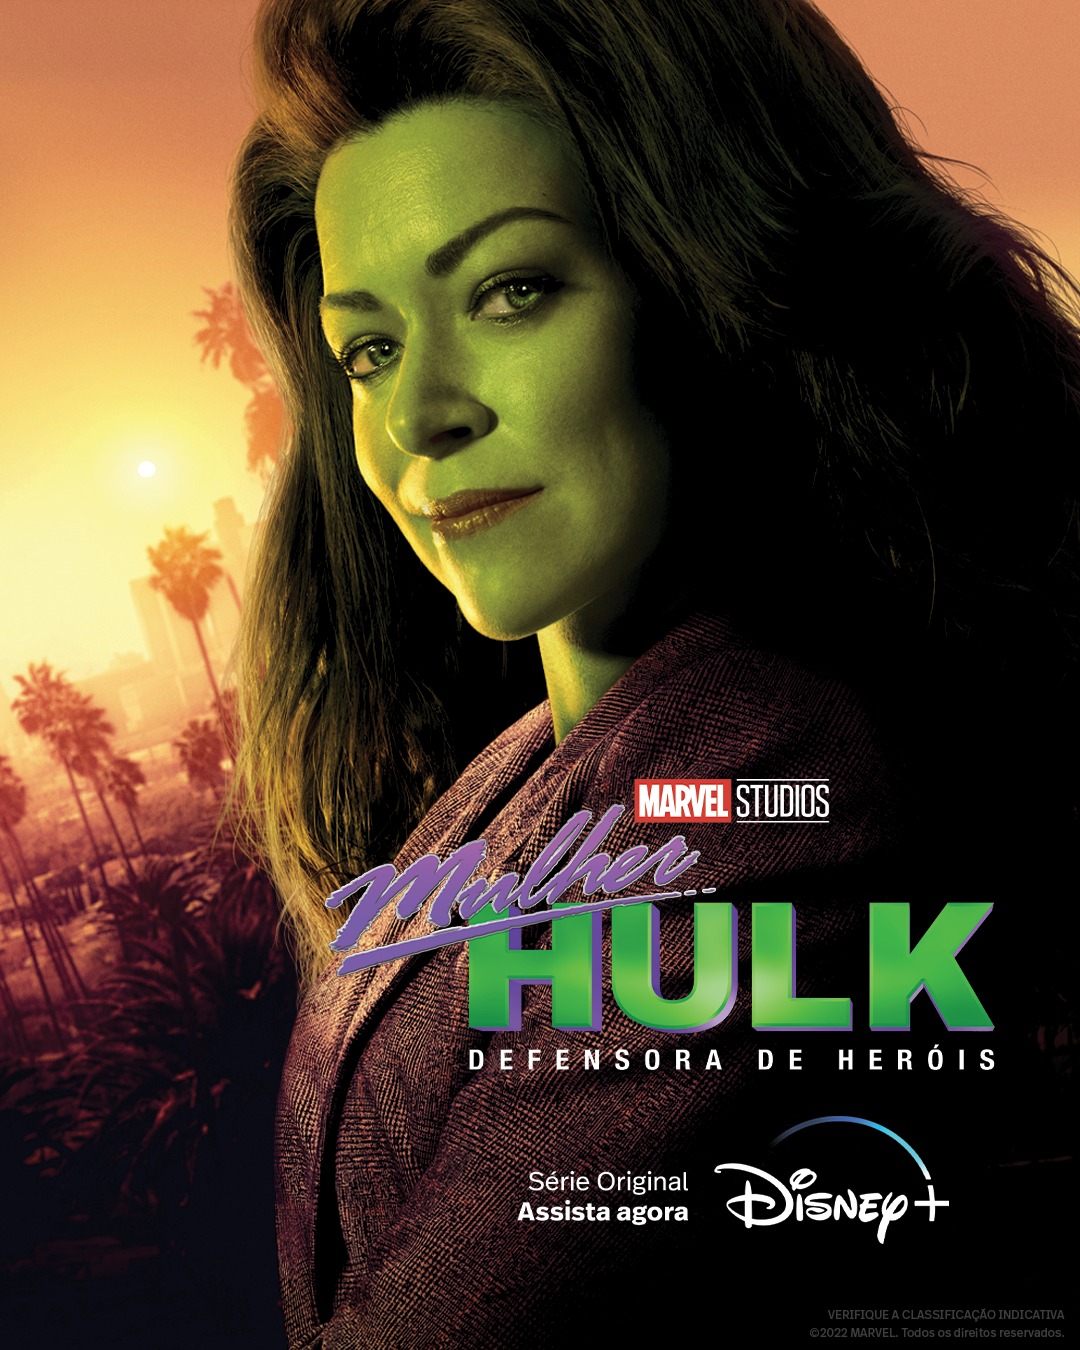 Conheça o elenco de Mulher-Hulk: Defensora de Heróis, nova série da Marvel